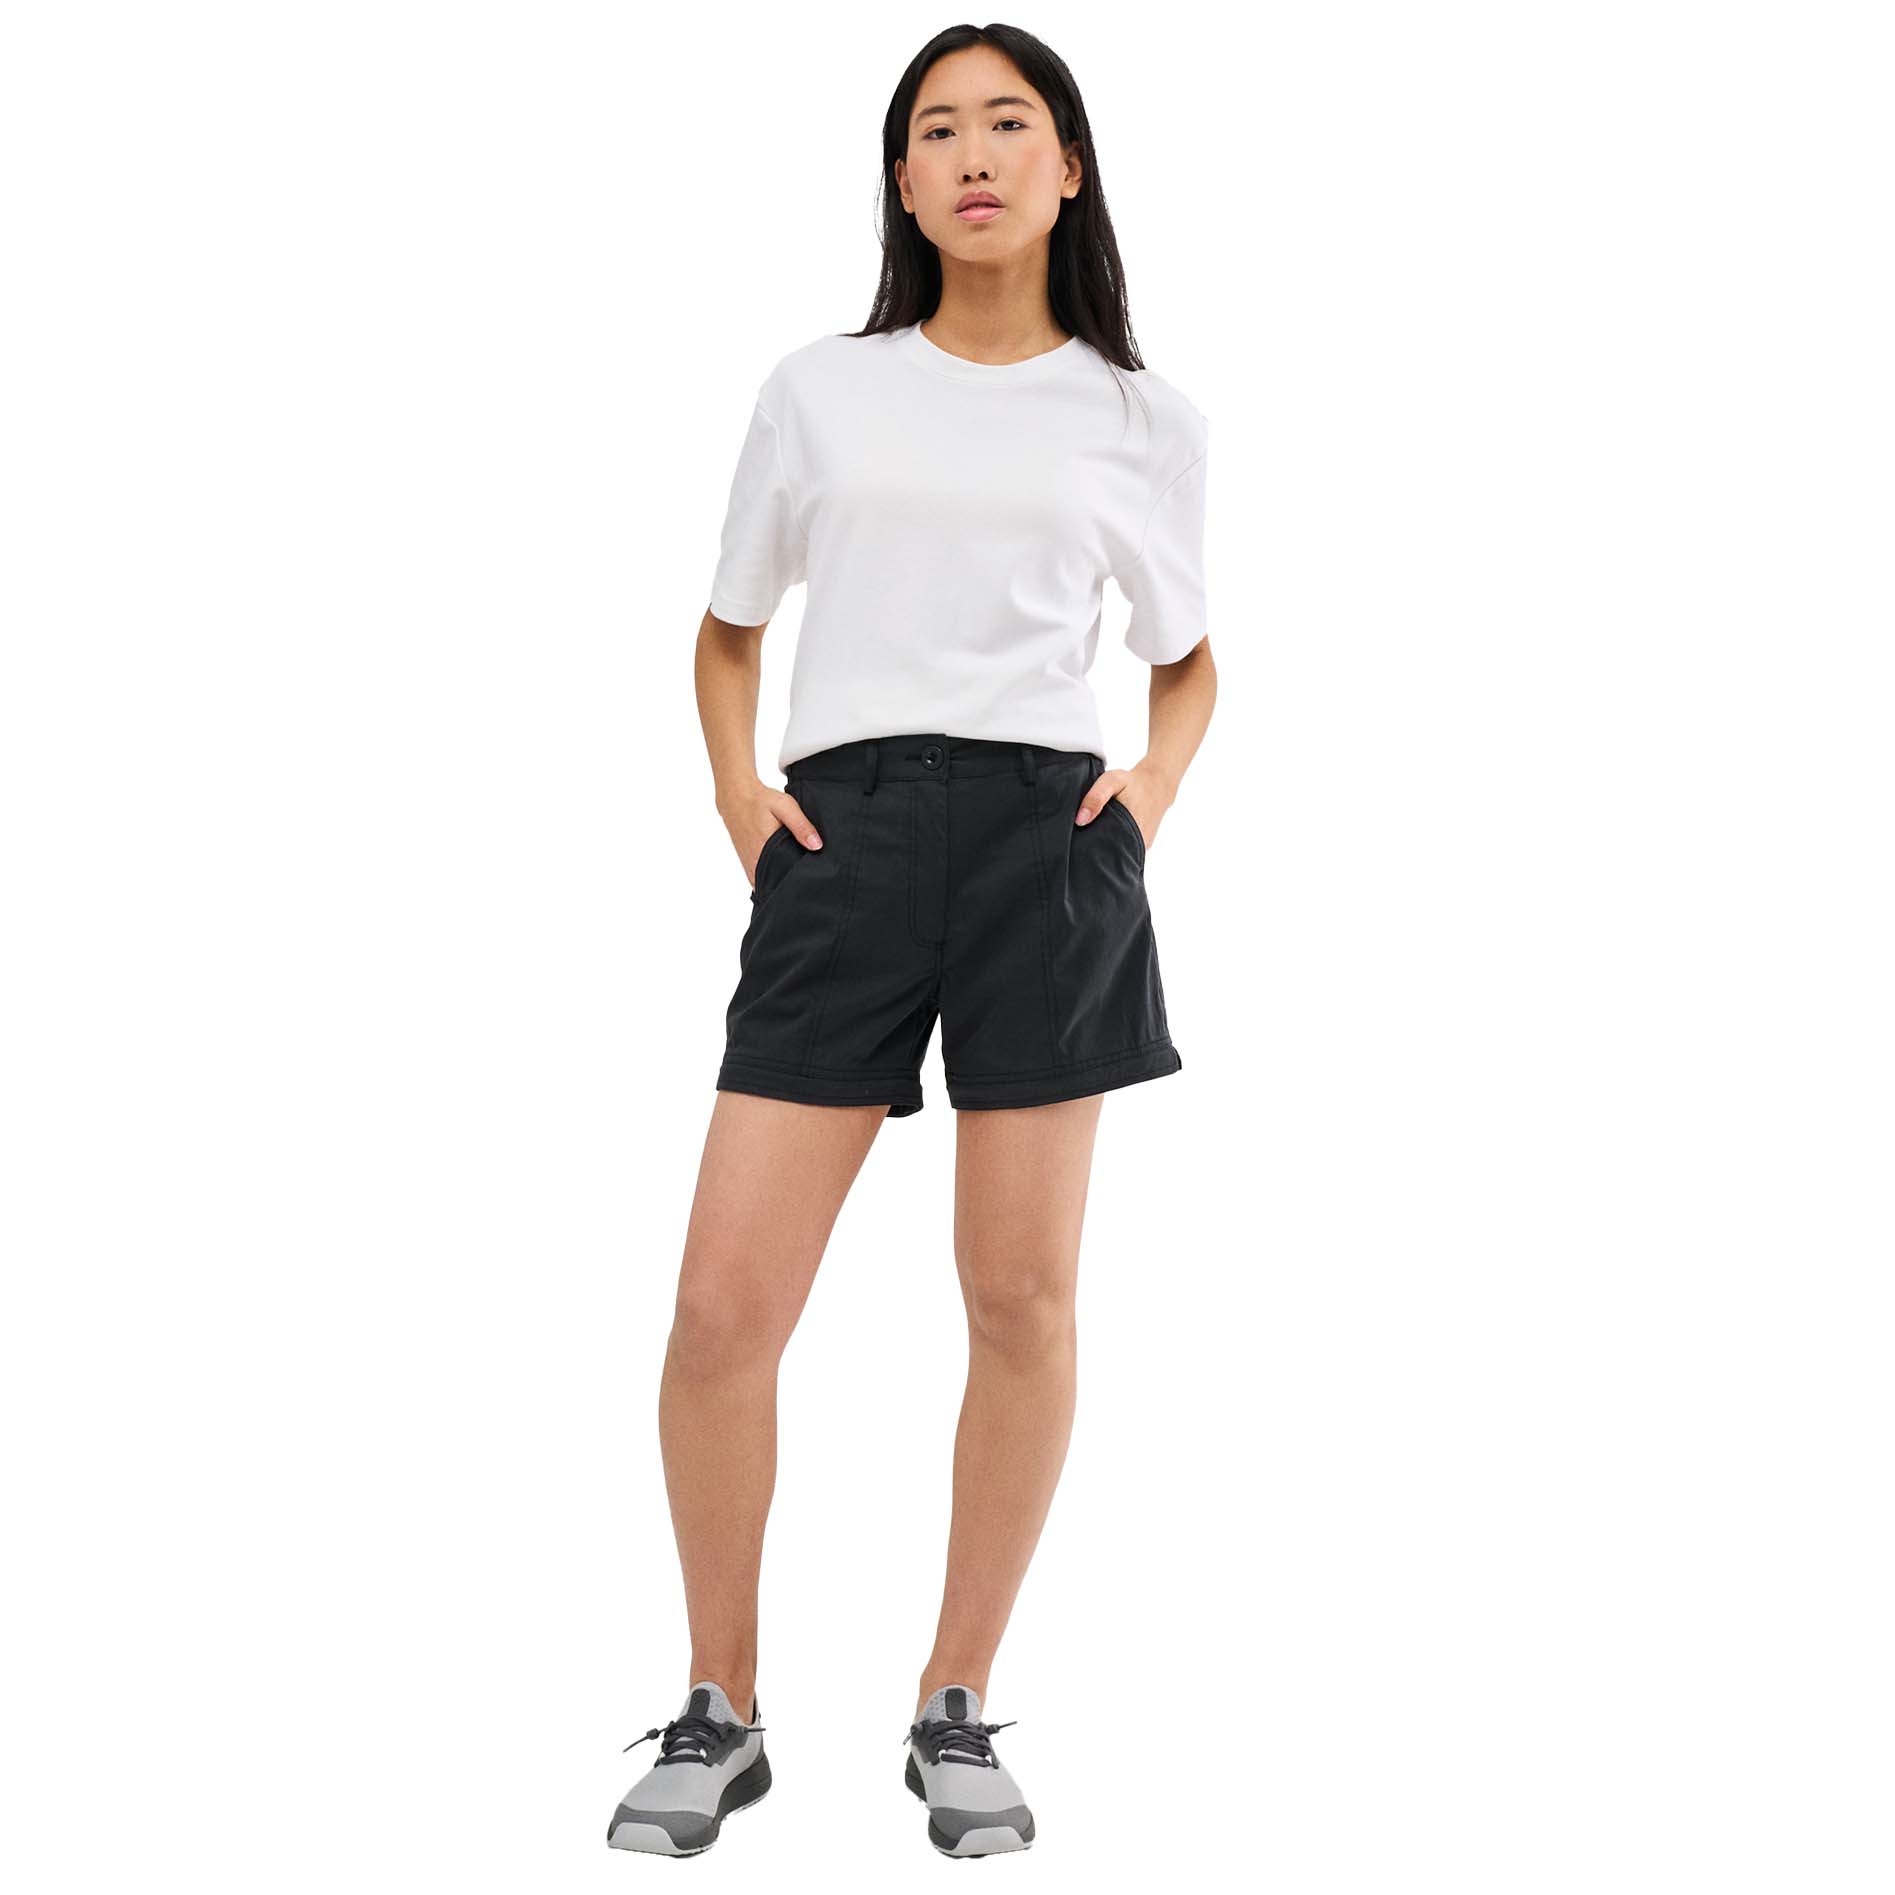 Tropicfeel ProTravel Zip-Off Pant Women's 2-in-1 Trousers/Shorts